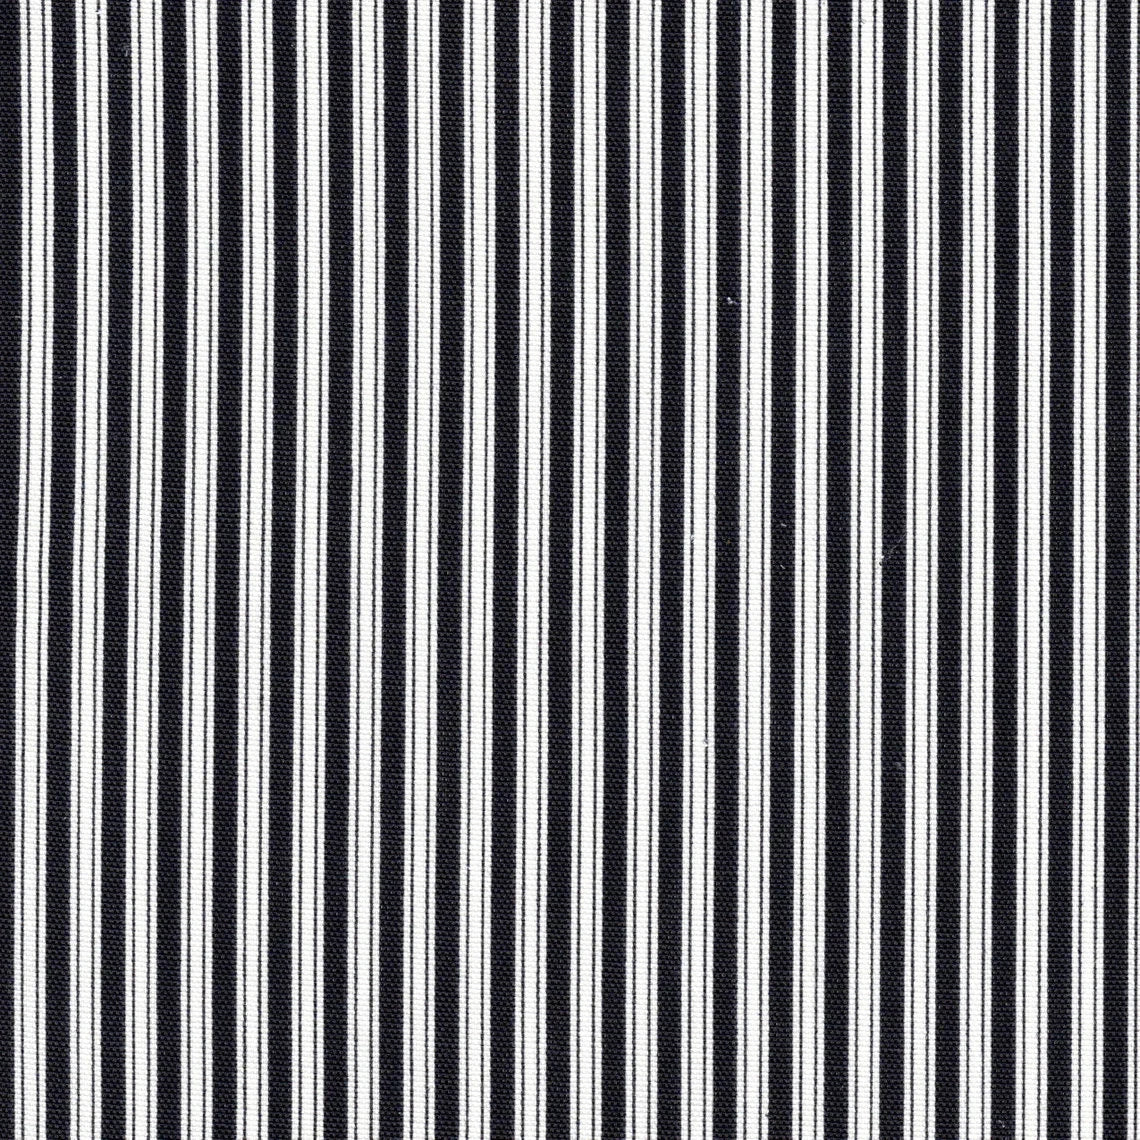 duvet cover in polo onyx black stripe on white